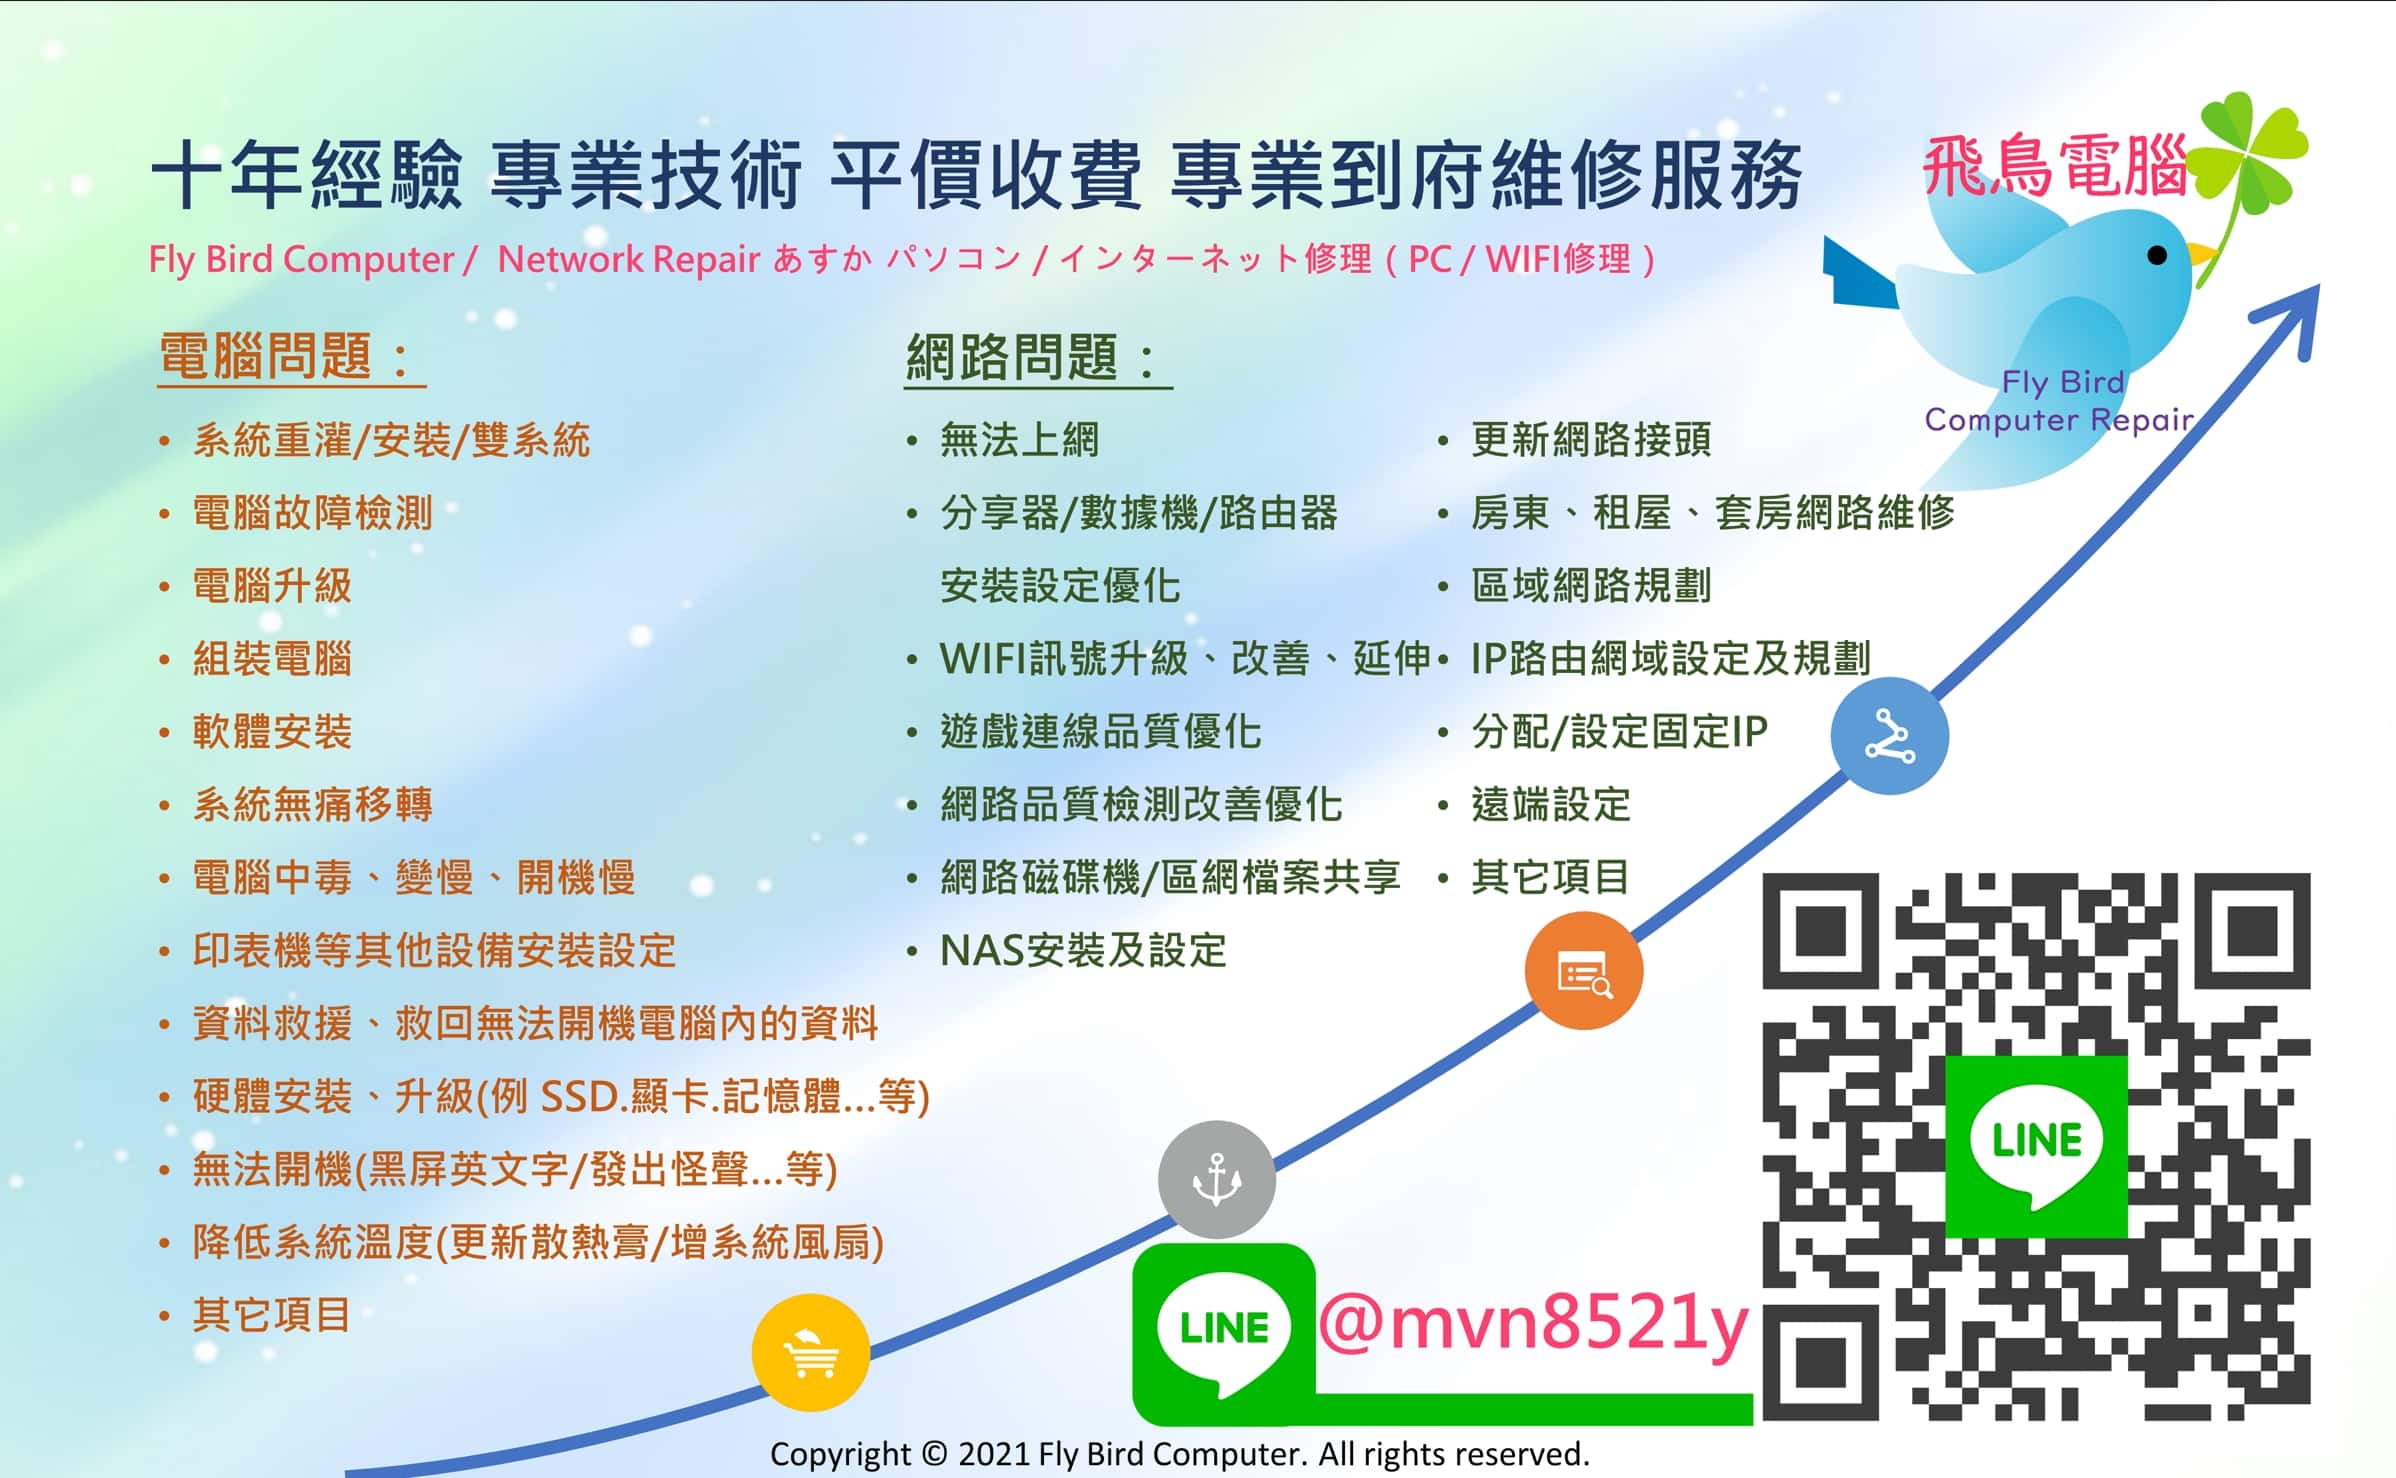 飛鳥電腦維修、網路維修，台北到府維修電腦服務 https://mvn8521y.business.site/